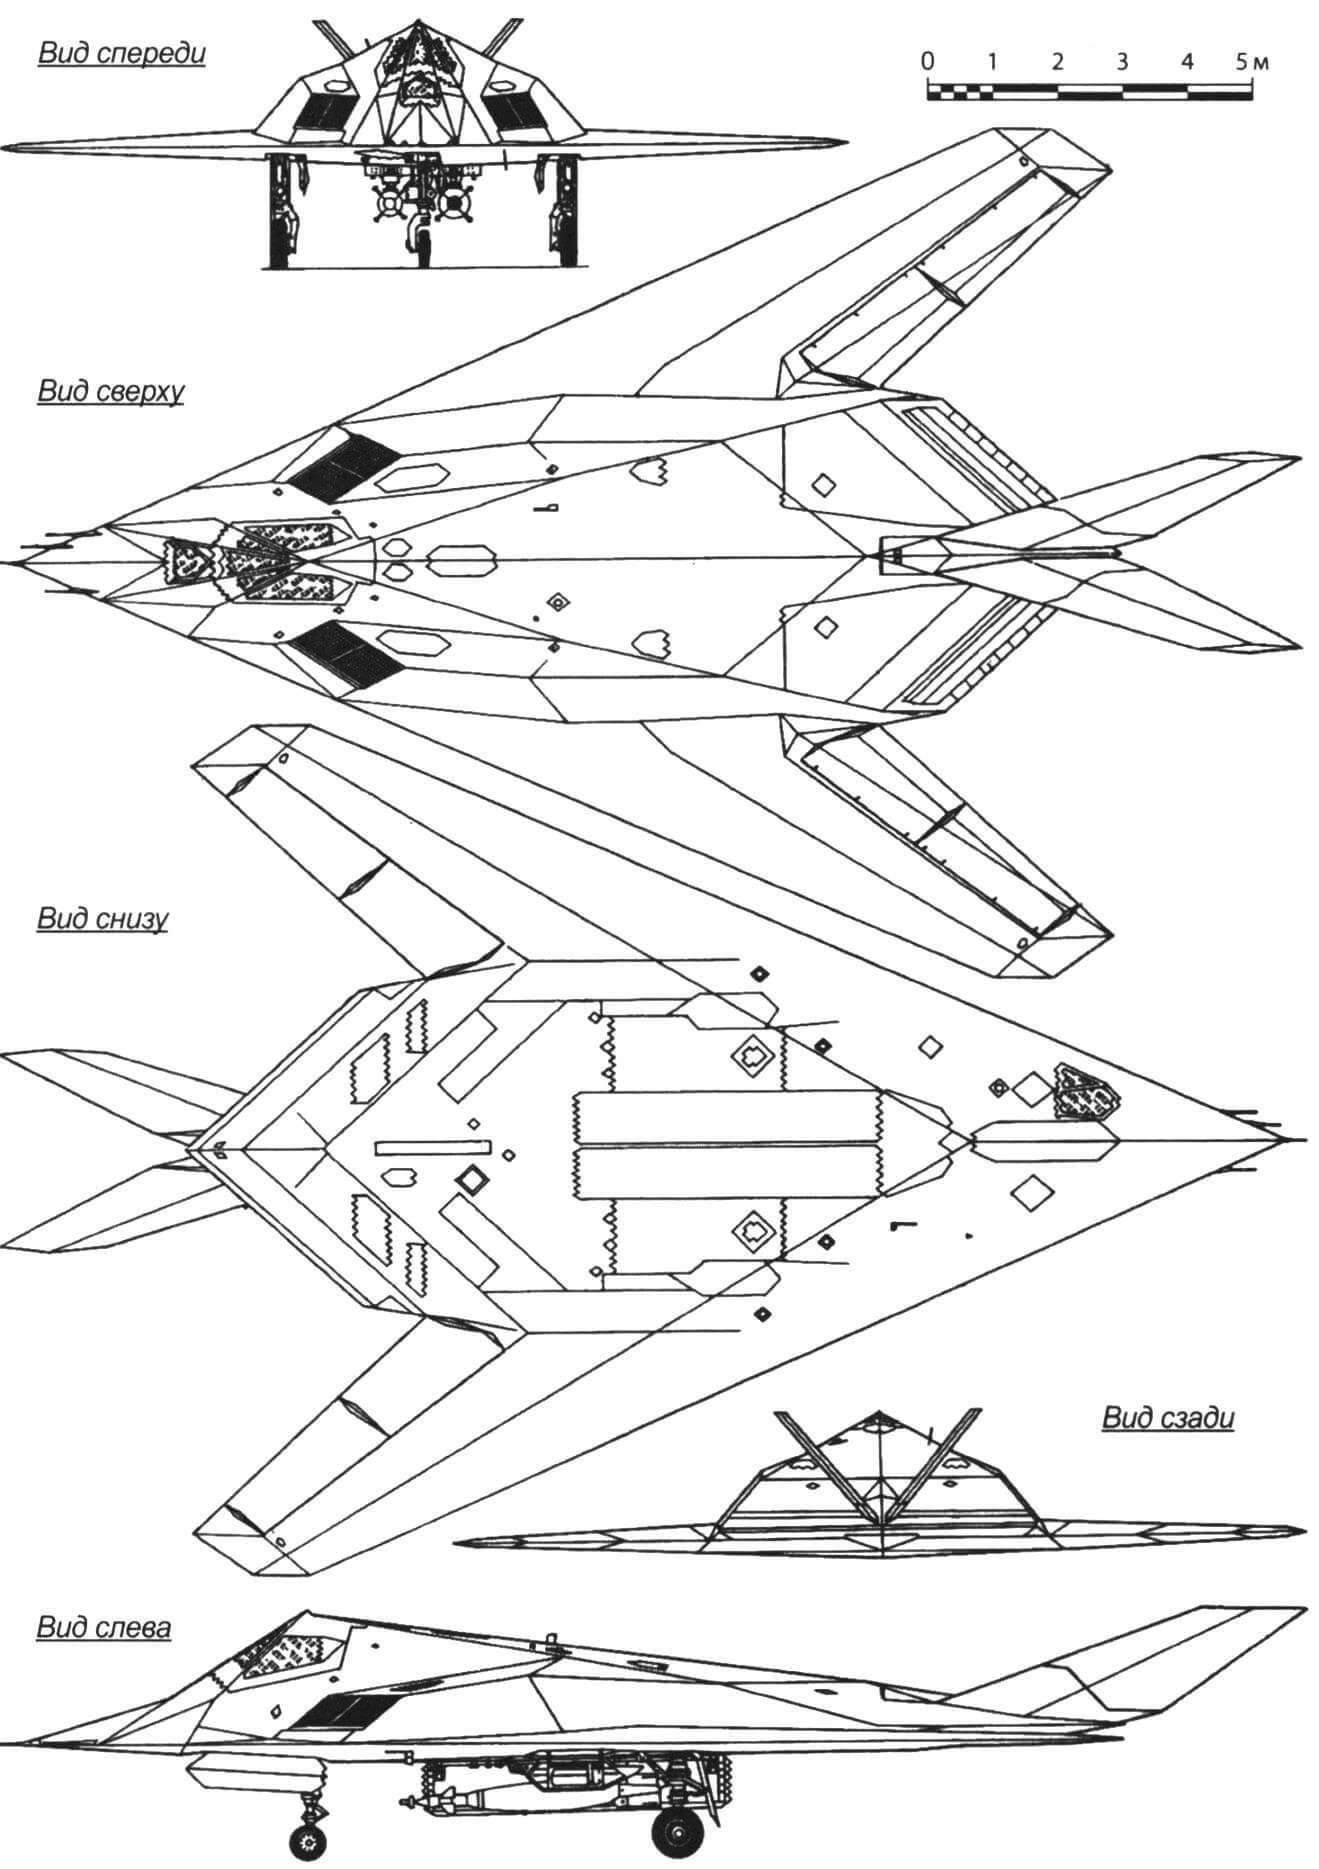 В помощь моделисту: проекции прототипа - самолета Lockheed F-117 Nighthawk. Размеры удобно переносить с помощью самодельного масштабного циркуля (см. «М-К» №9-2020)